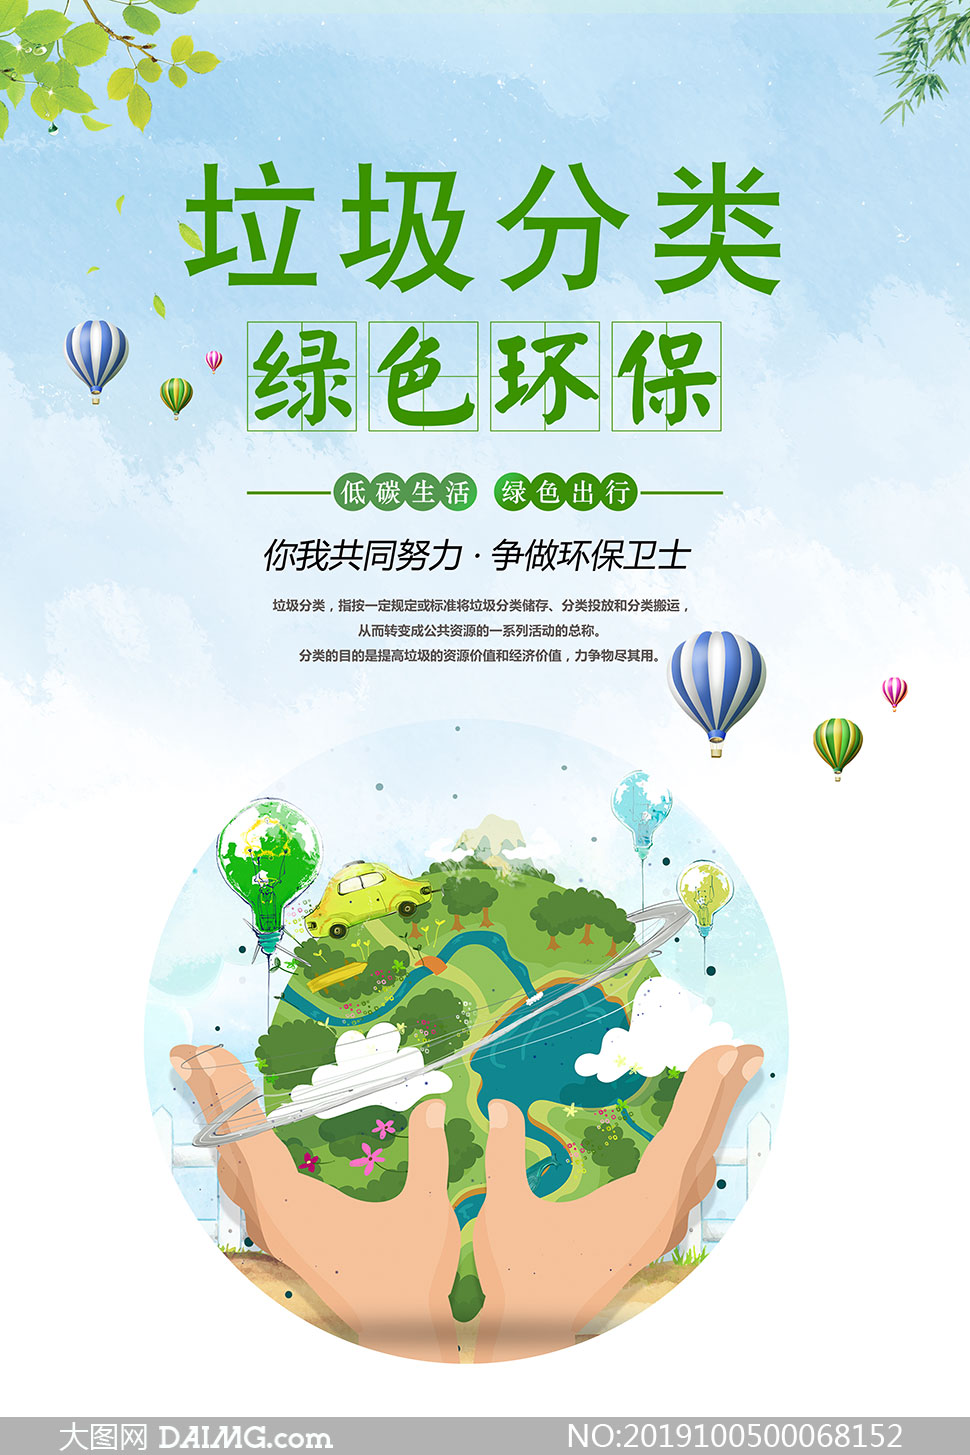 垃圾分类绿色环保宣传海报psd素材